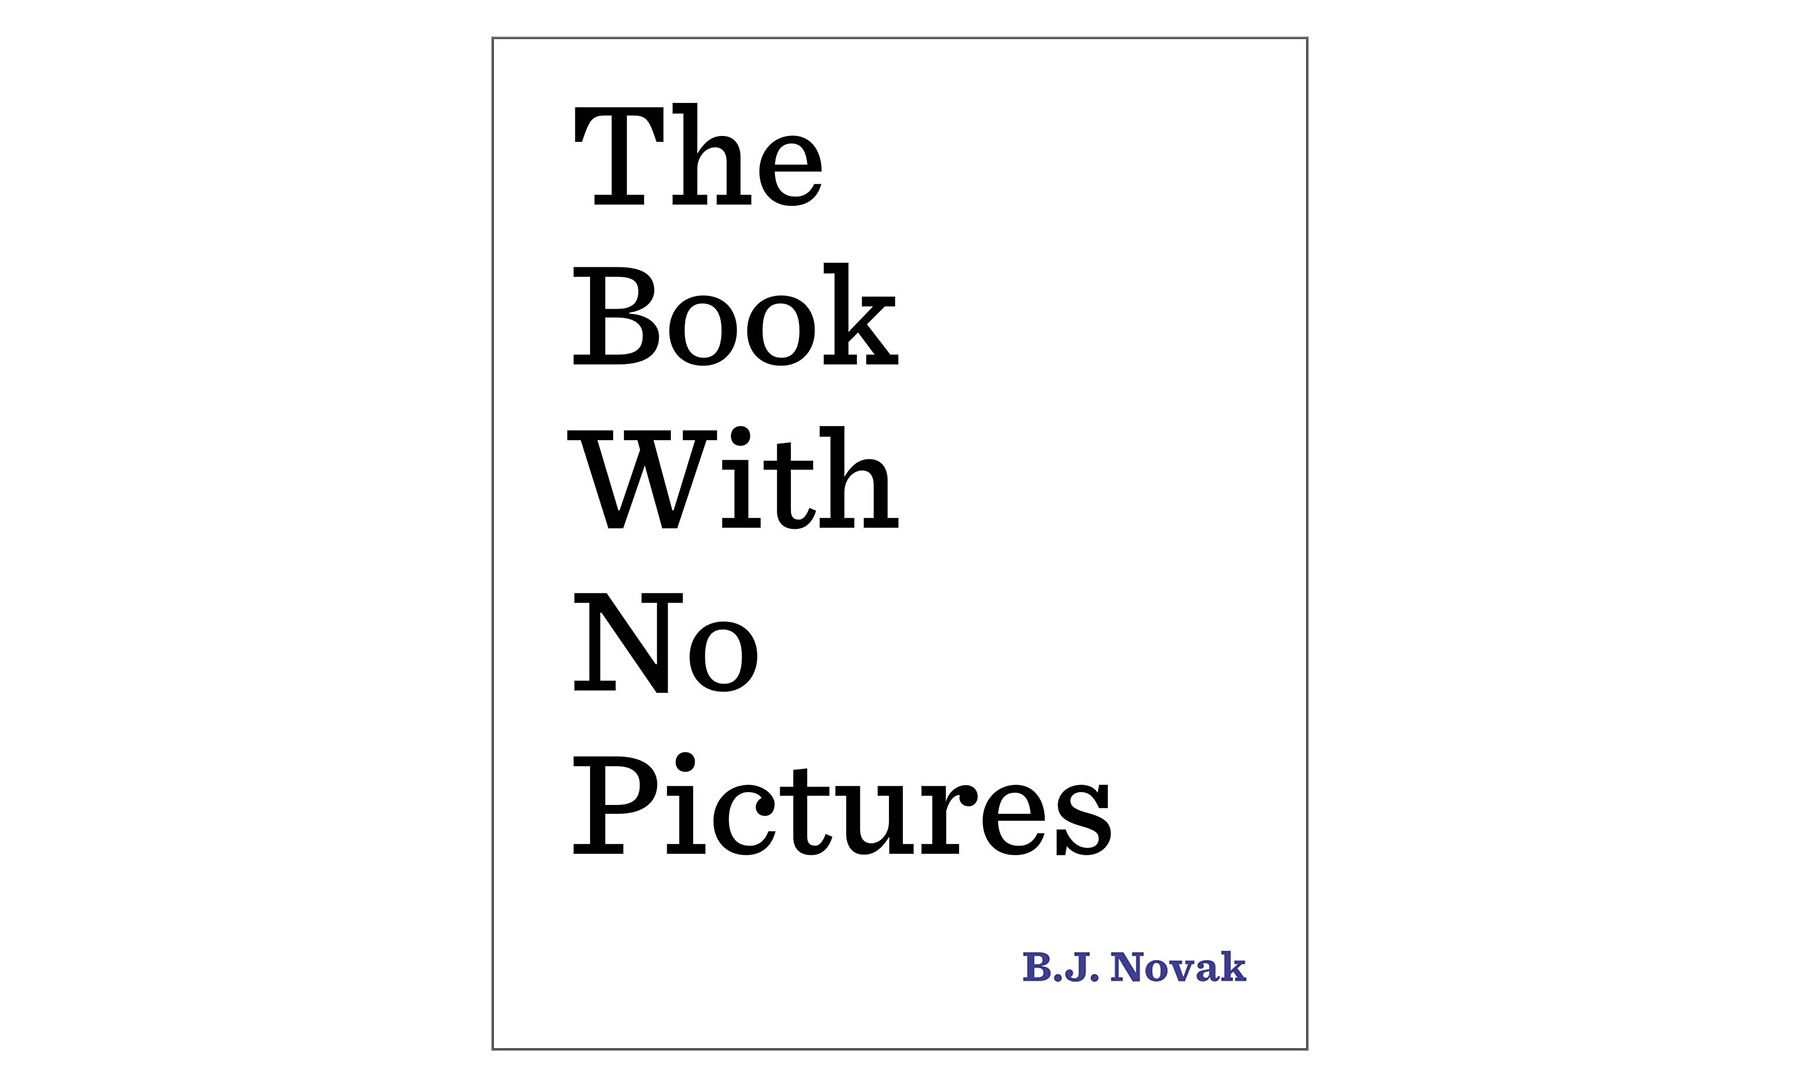 Das Buch ohne Bilder von B.J. Novak